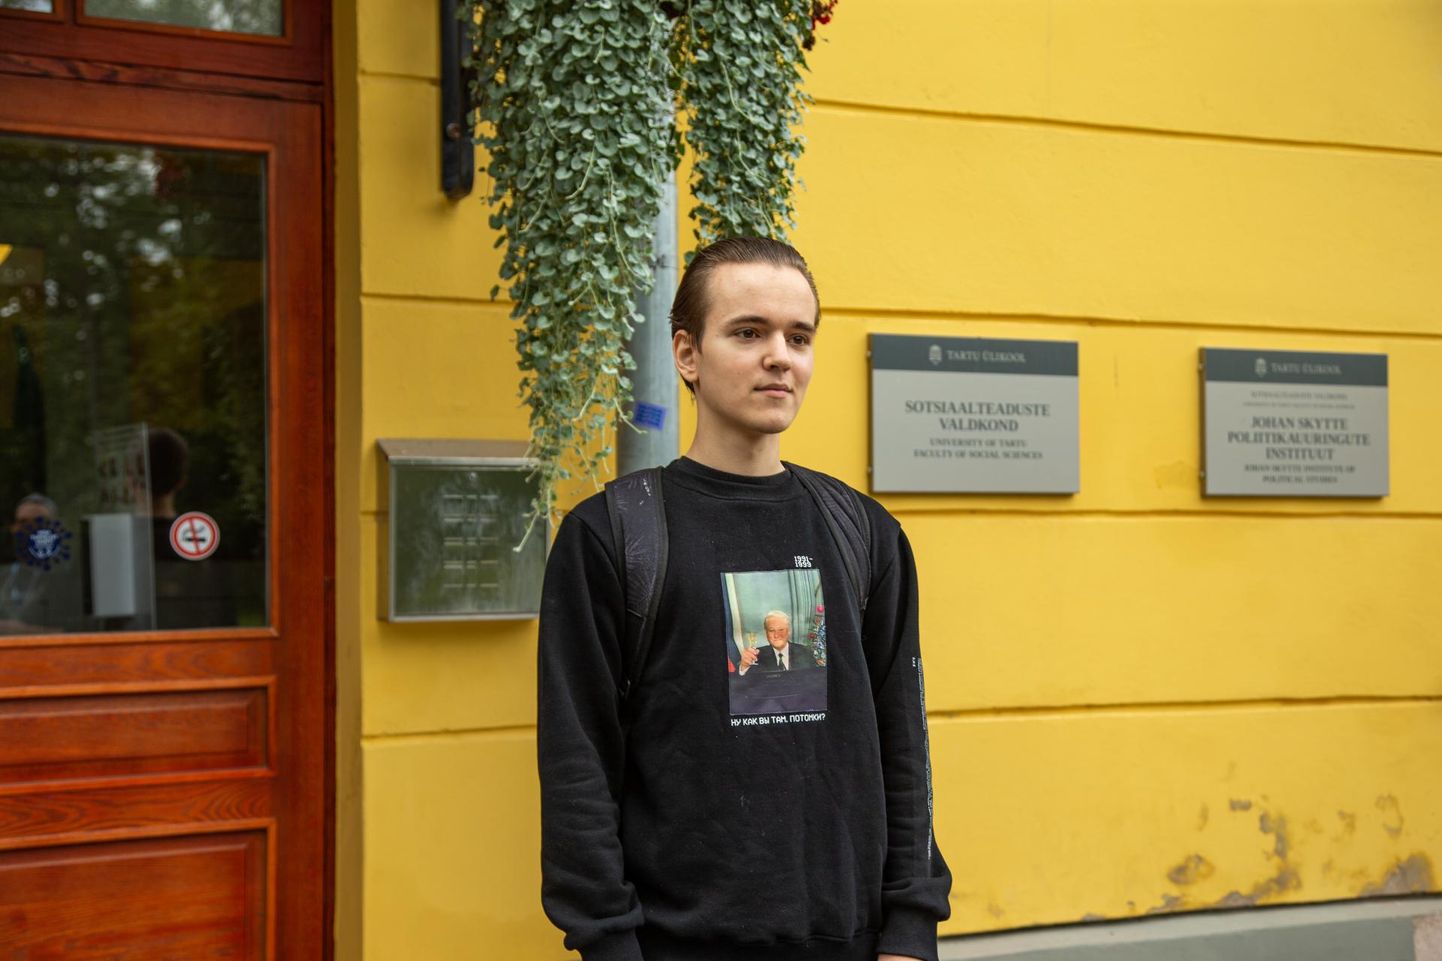 Даниил Мартикайнен-Ярлуковски в следующем учебном году будет изучать журналистику и коммуникации в Тартуском университете.